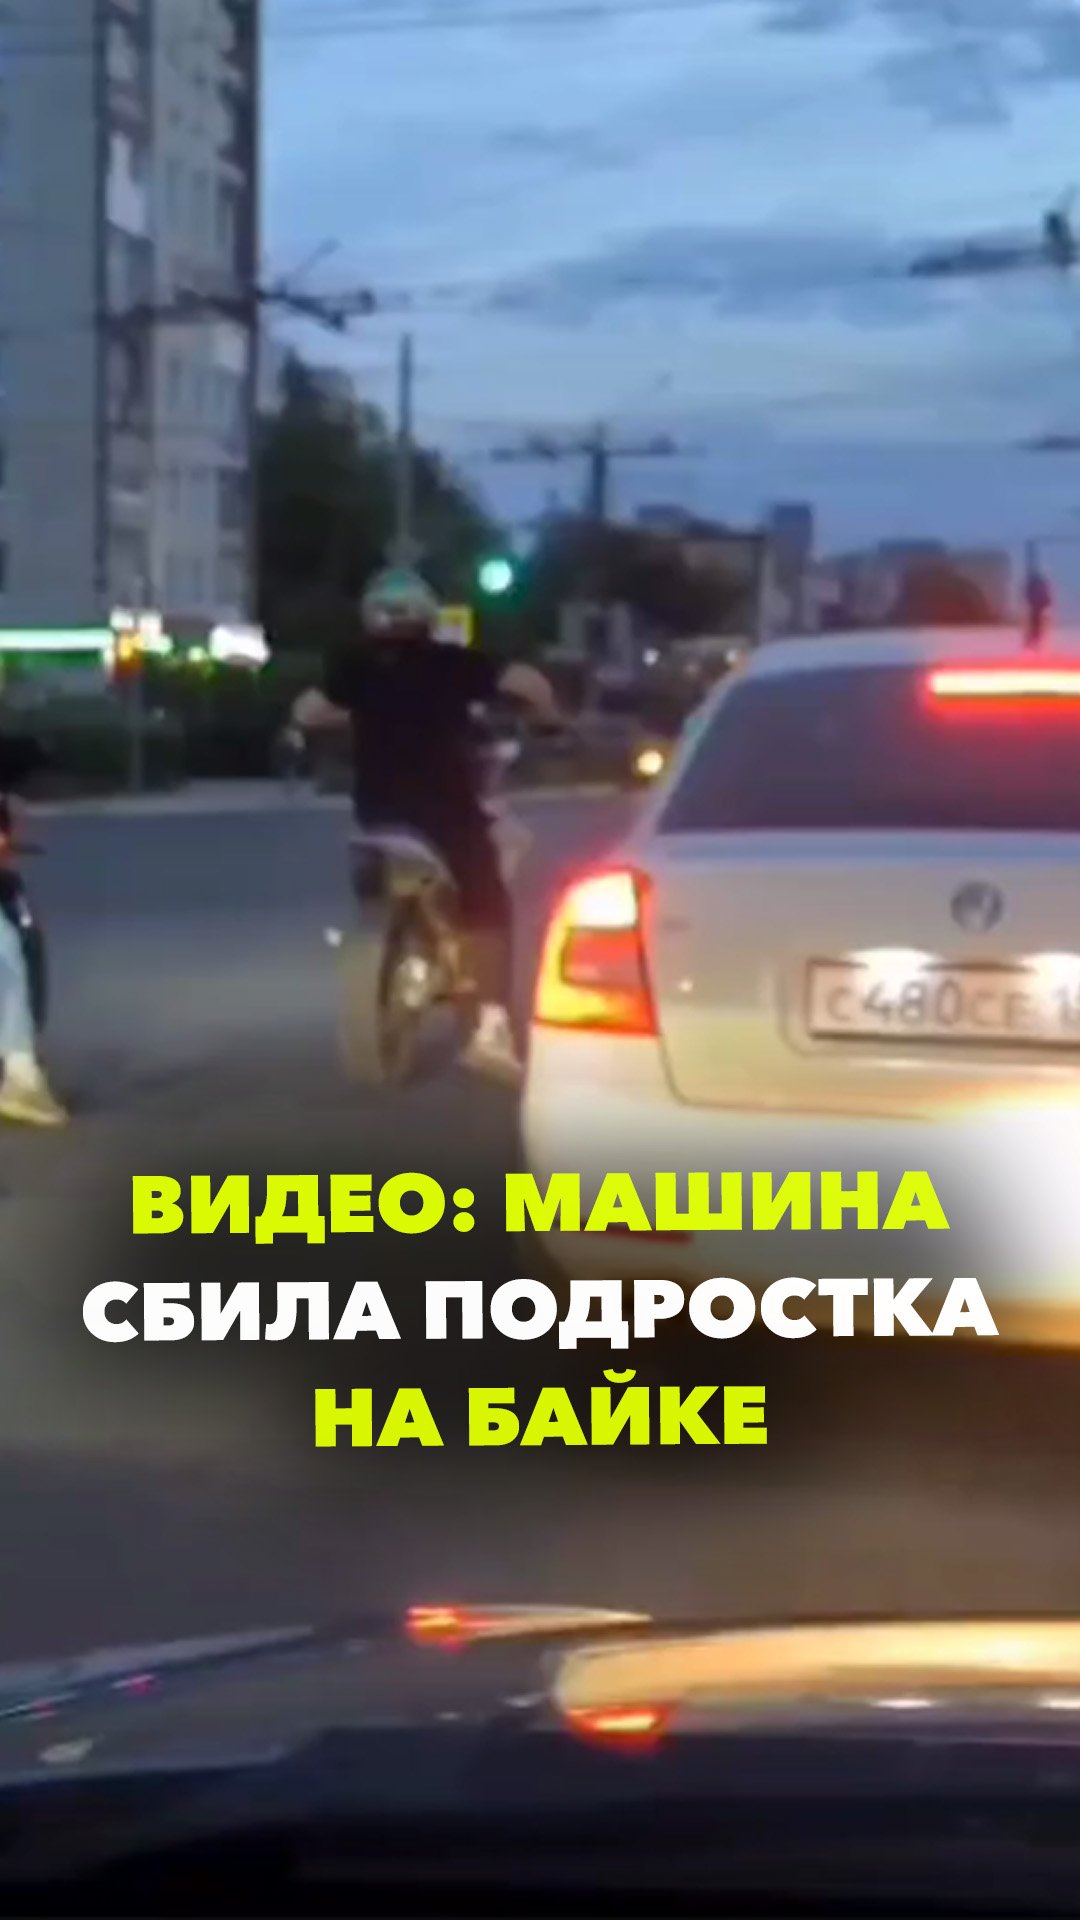 Авария в Дзержинске: машина сбила подростка на байке